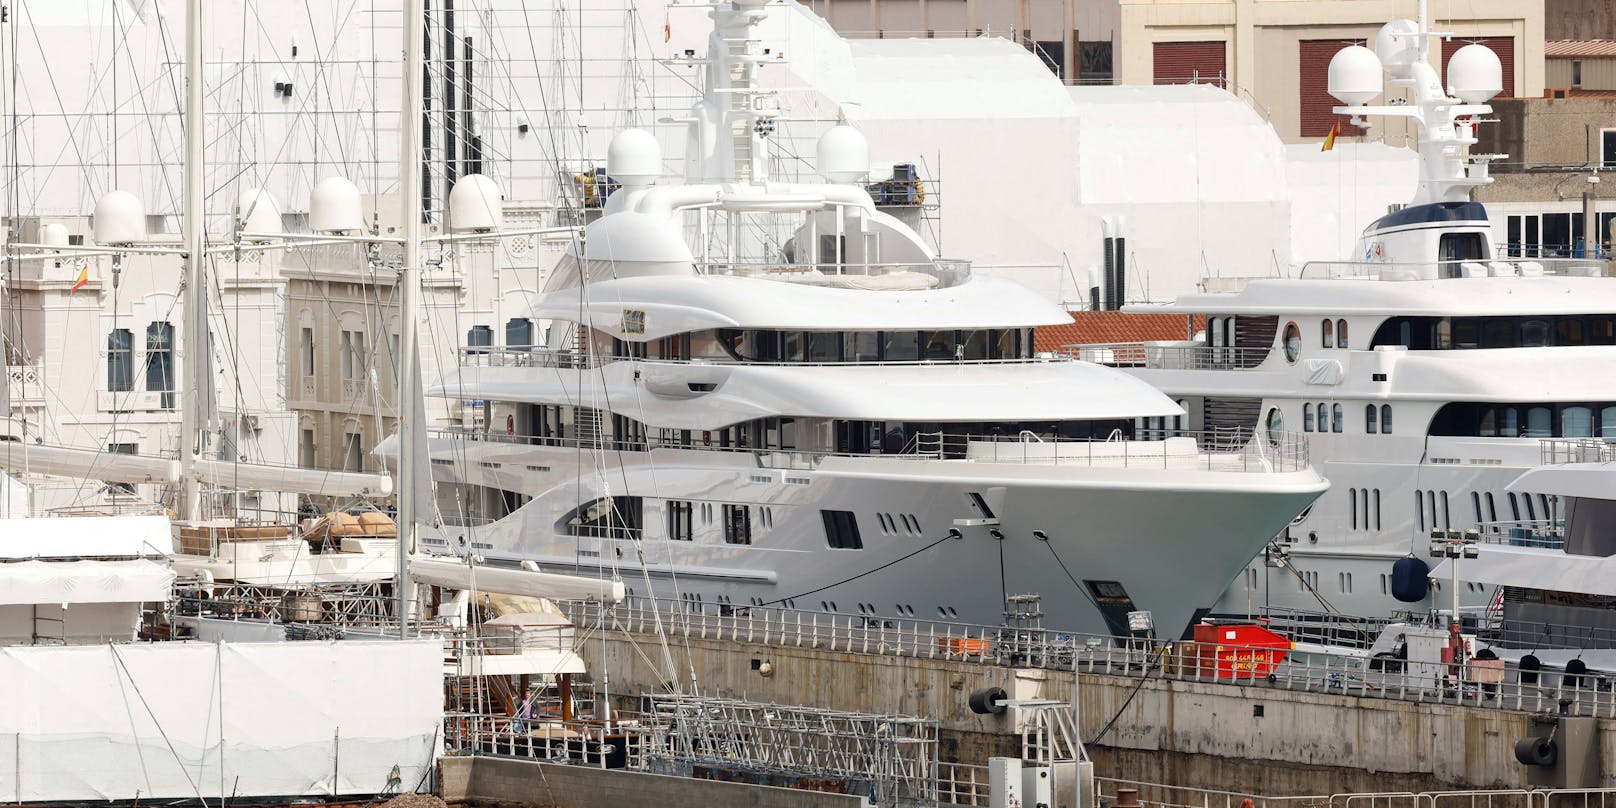 Die Superjacht "Valerie", die derzeit im Hafen von Barcelona festsitzt, ist rund 135 Millionen Euro wert.